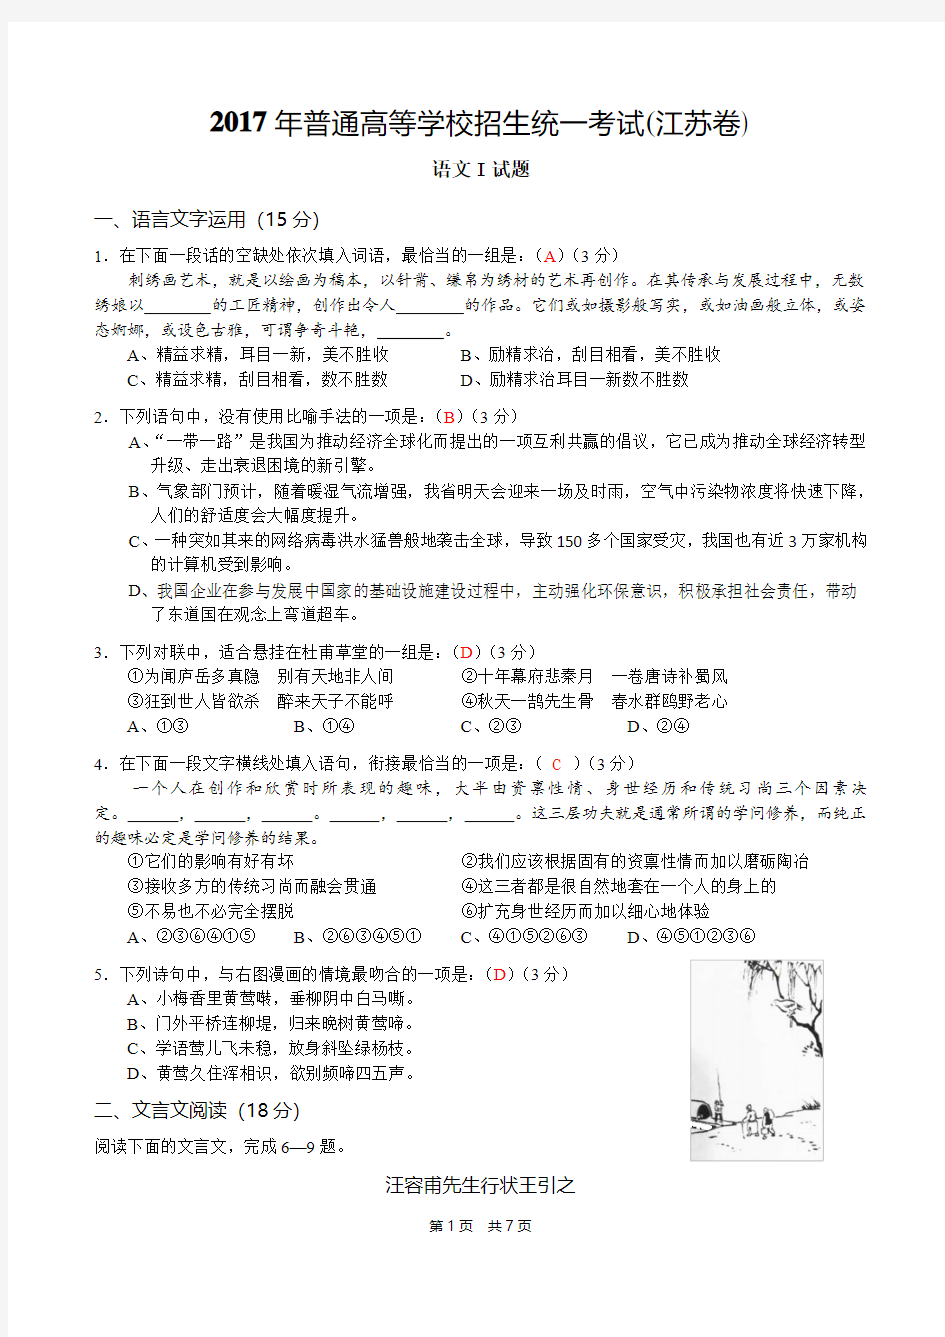 2017年江苏省语文高考试卷及答案(含附加题)